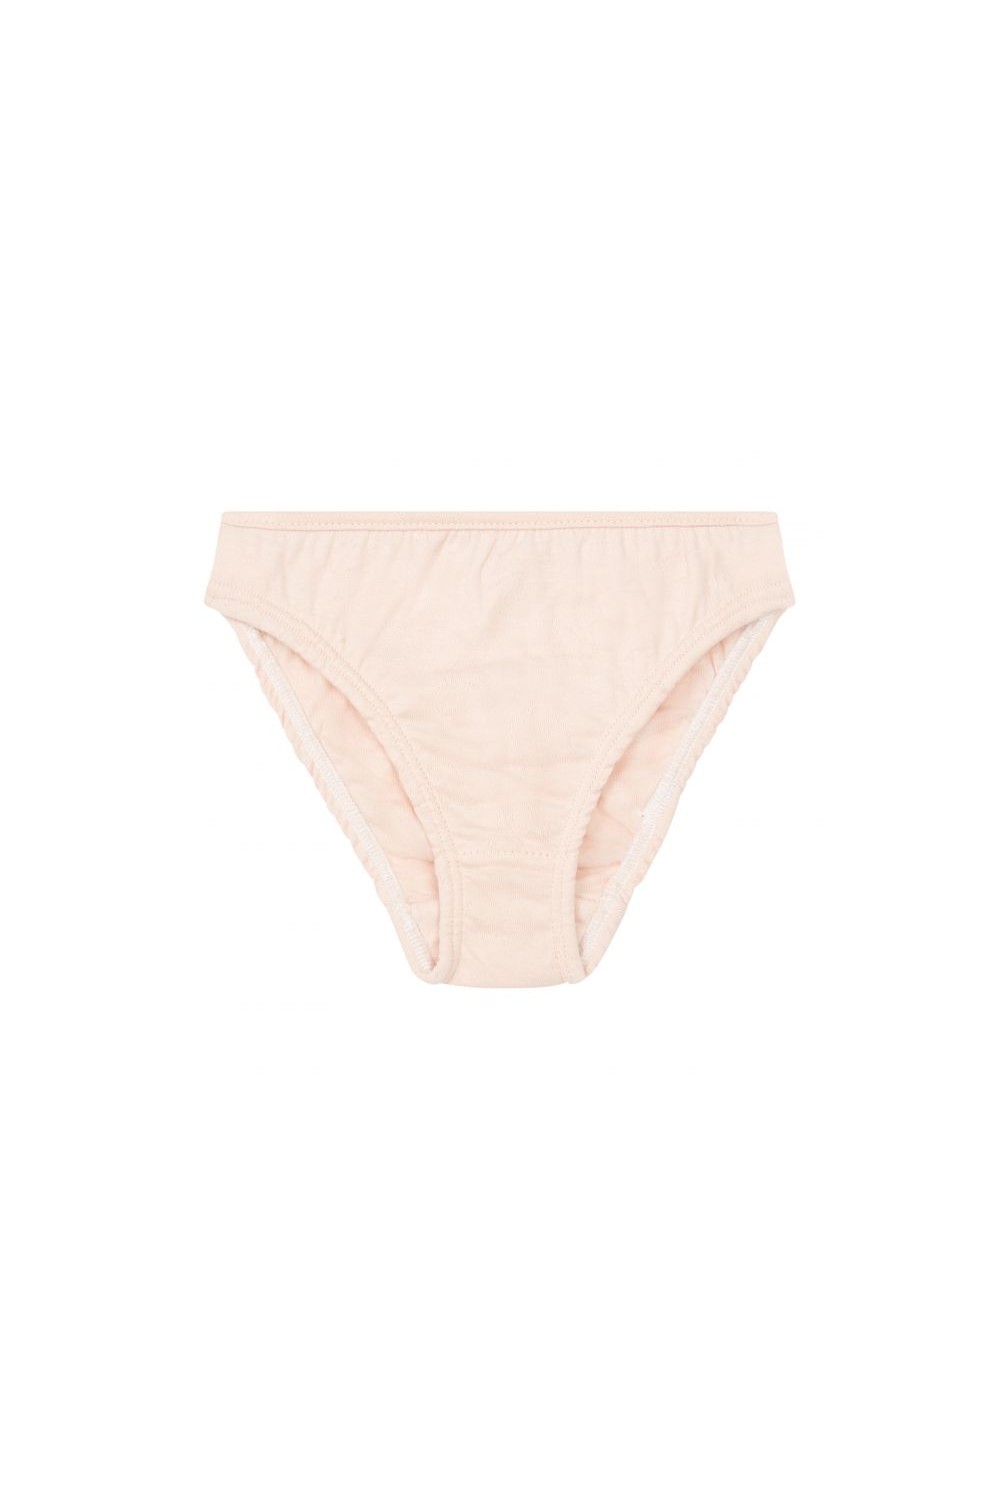 BNIP Girls Sz 4 to 6 Dora the Explorer Pack of 4 Pure Cotton Briefs  Underwear